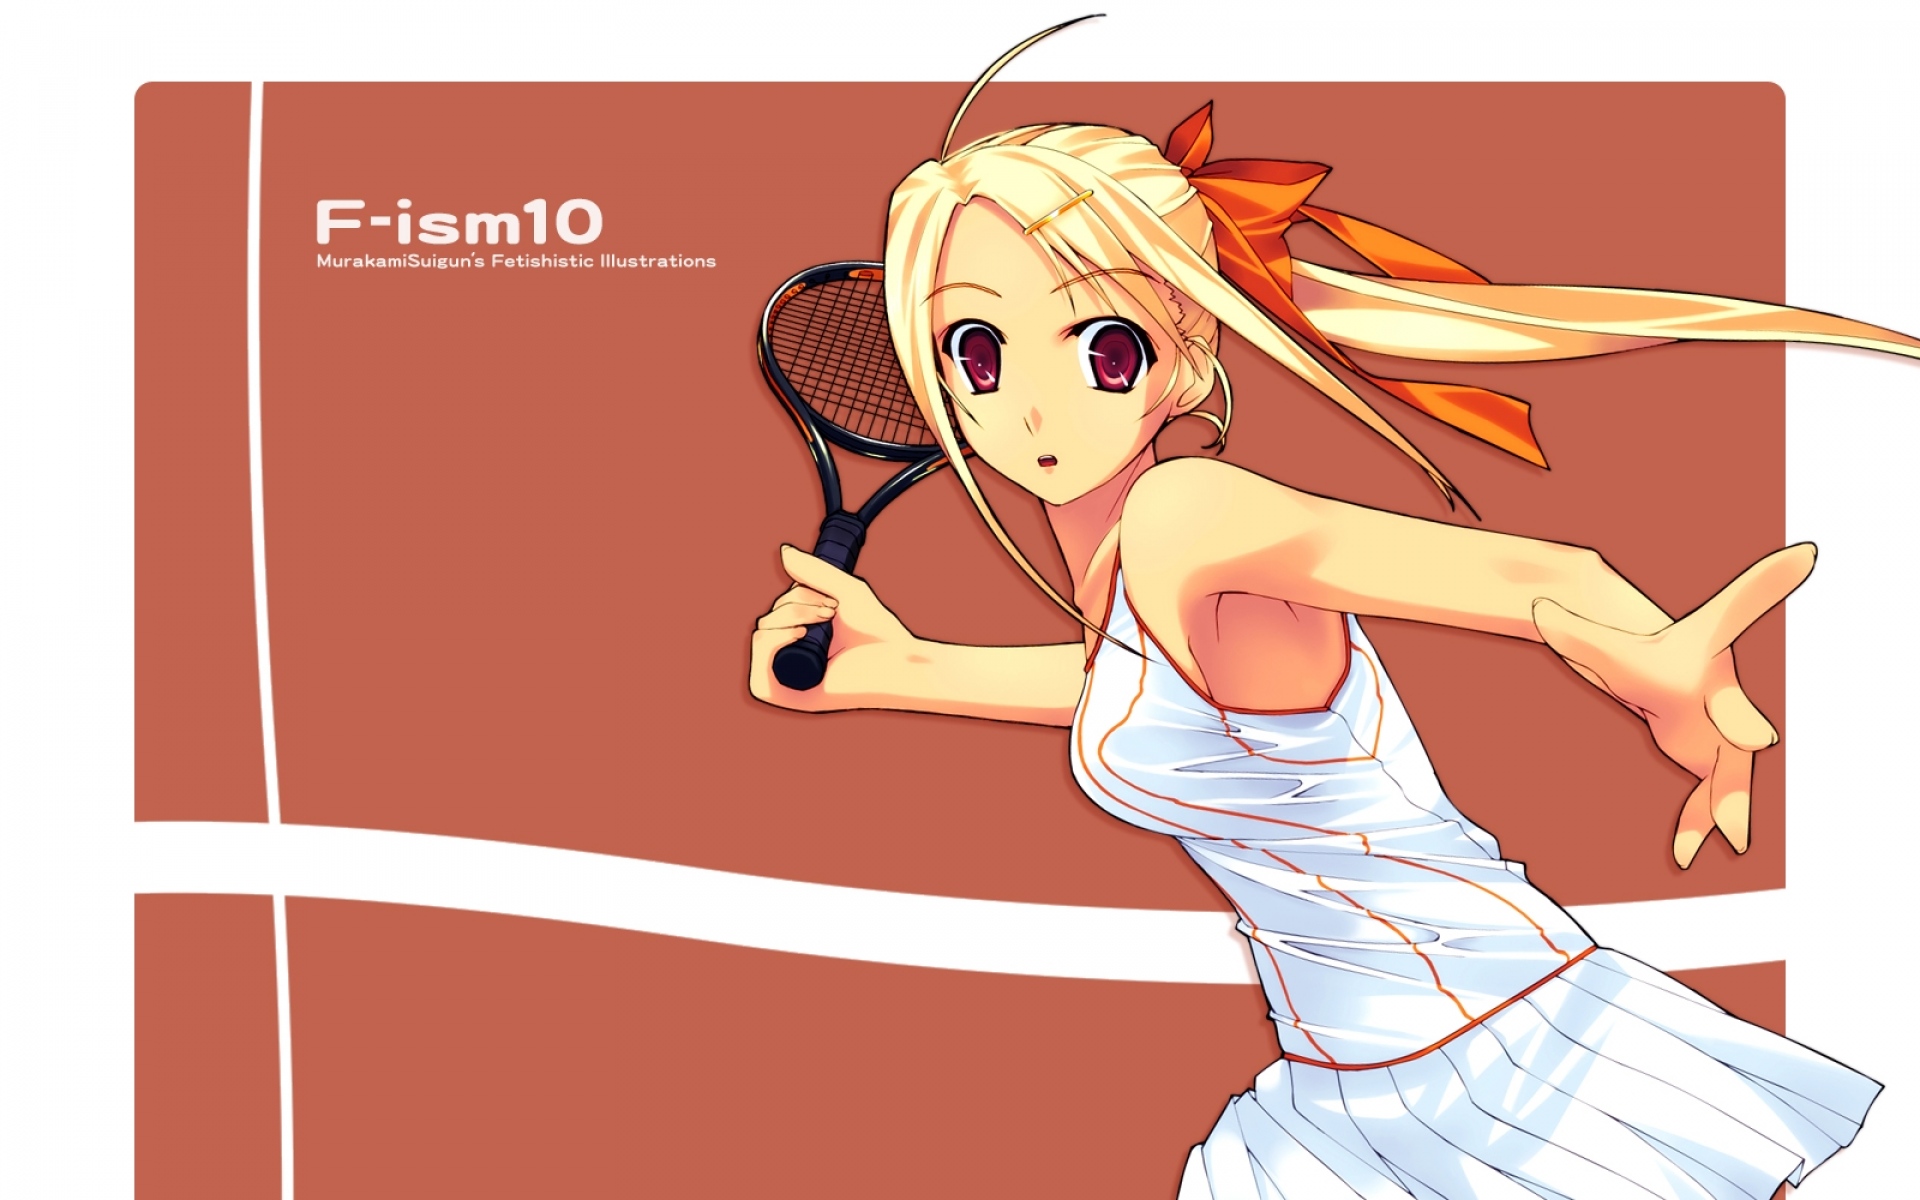 Картинки Murakami suigun, f-ism, девушка, блондинка, ракетка, теннис фото и обои на рабочий стол